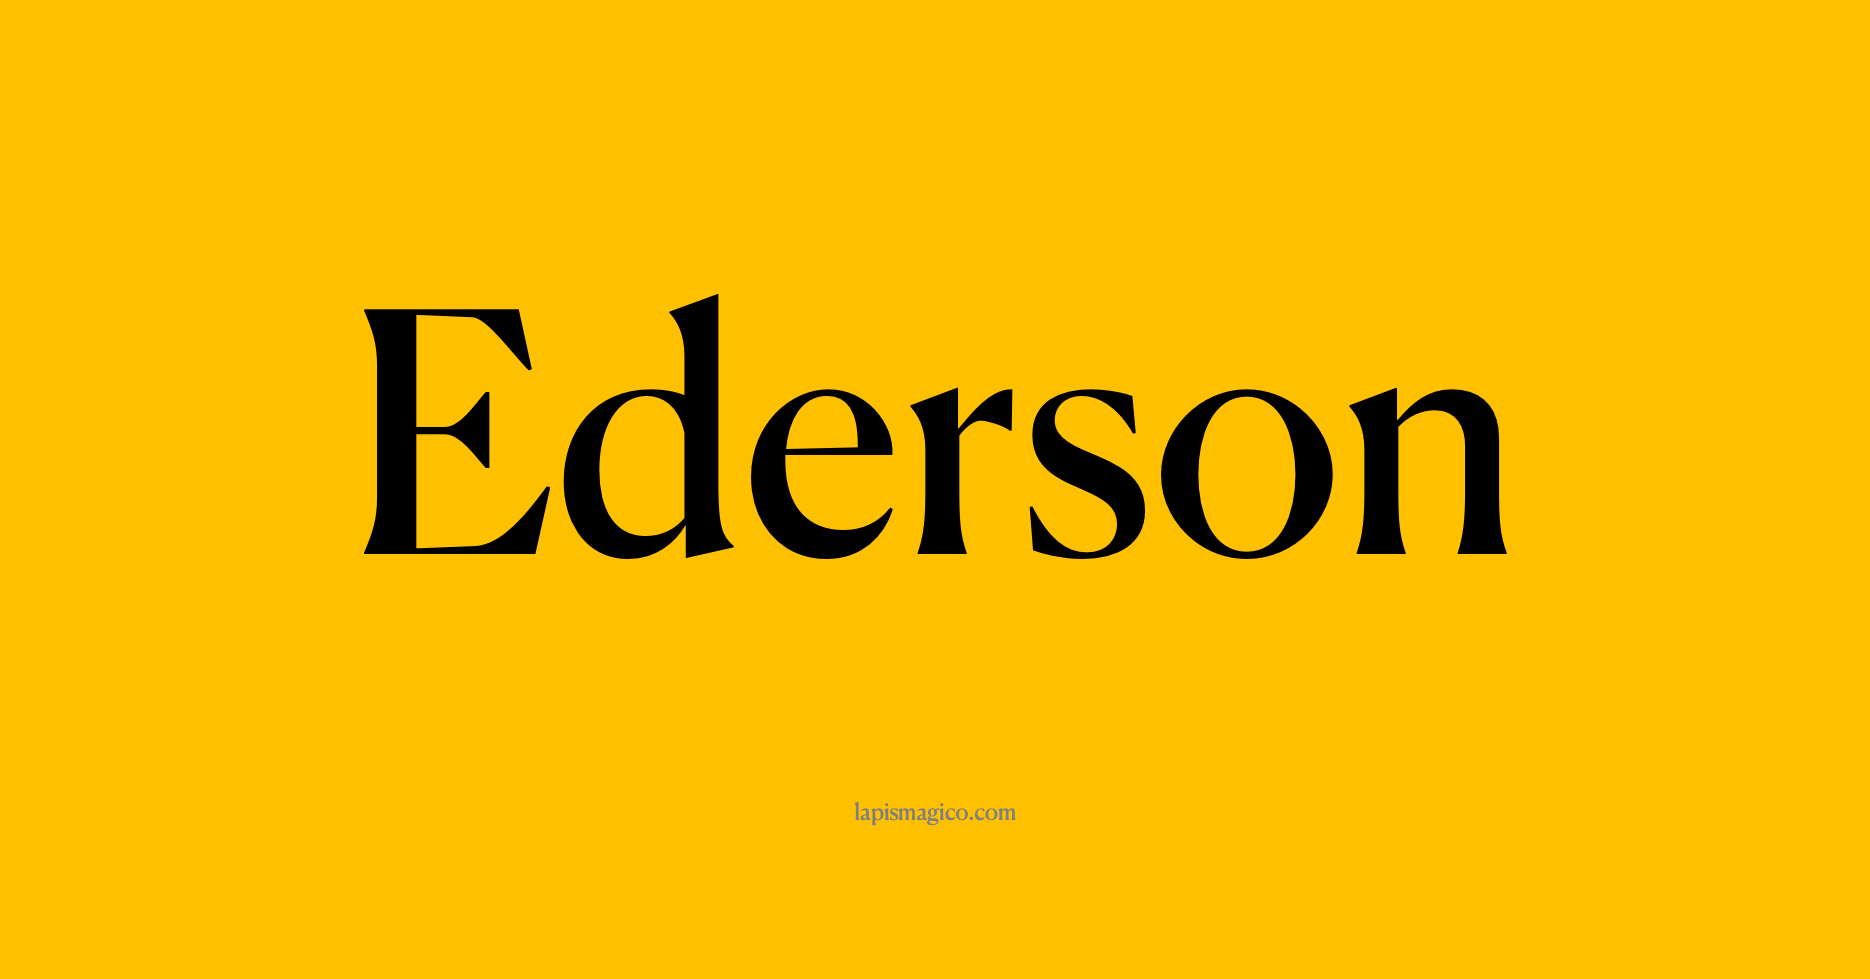 Nome Ederson, ficha divertida com pontilhado para crianças